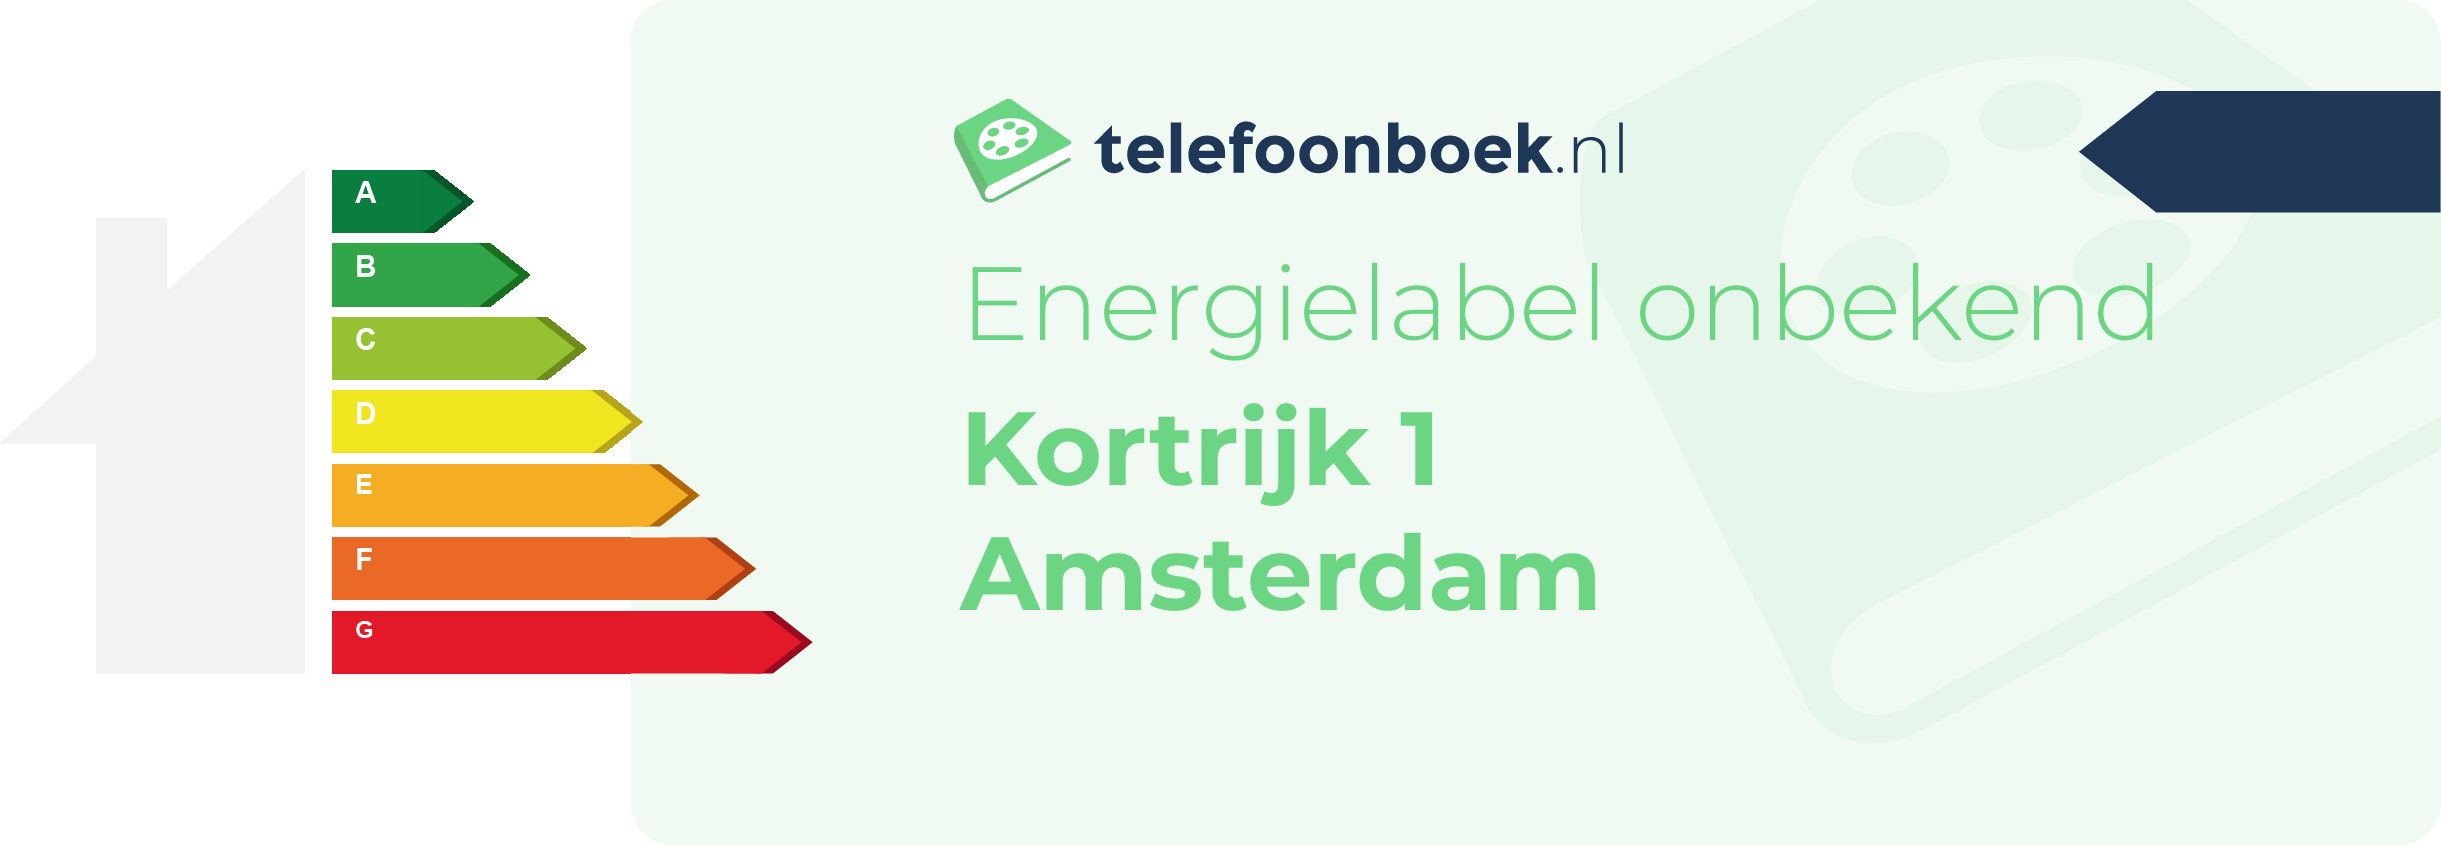 Energielabel Kortrijk 1 Amsterdam